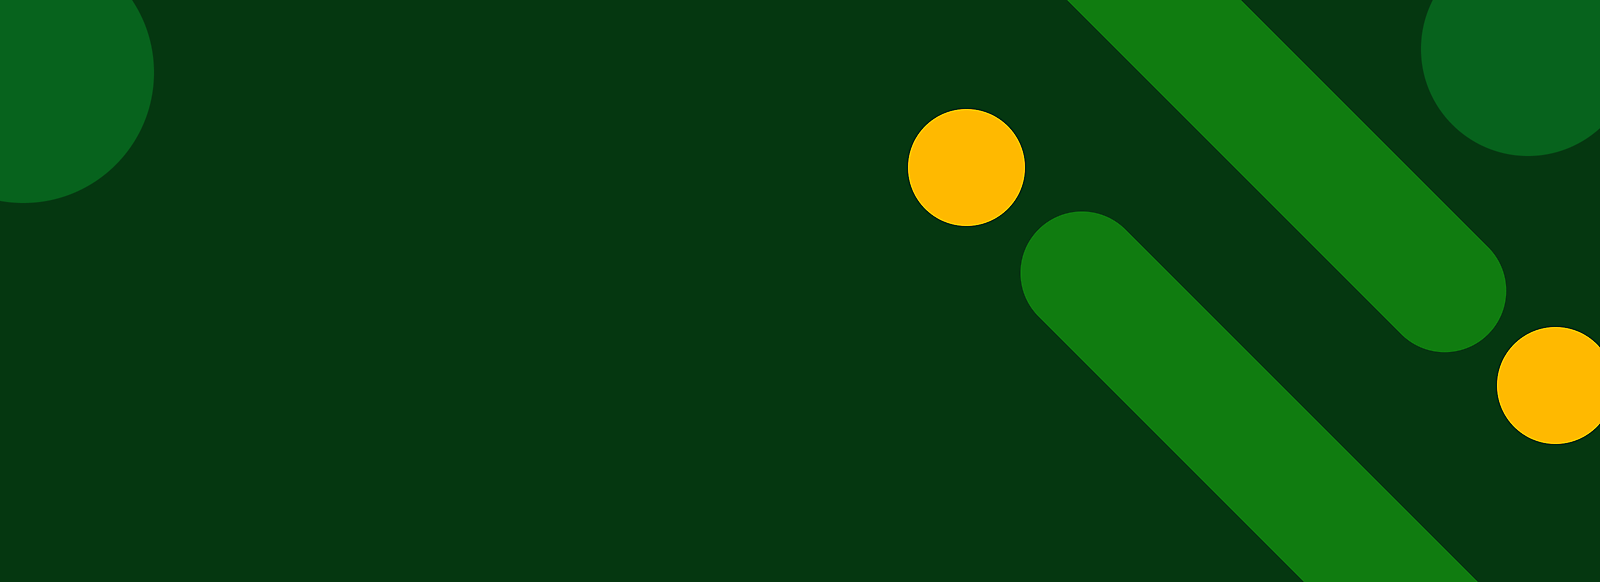 Abstraktus žalias fonas su geltonais taškeliais ir įstrižomis žaliomis juostomis.